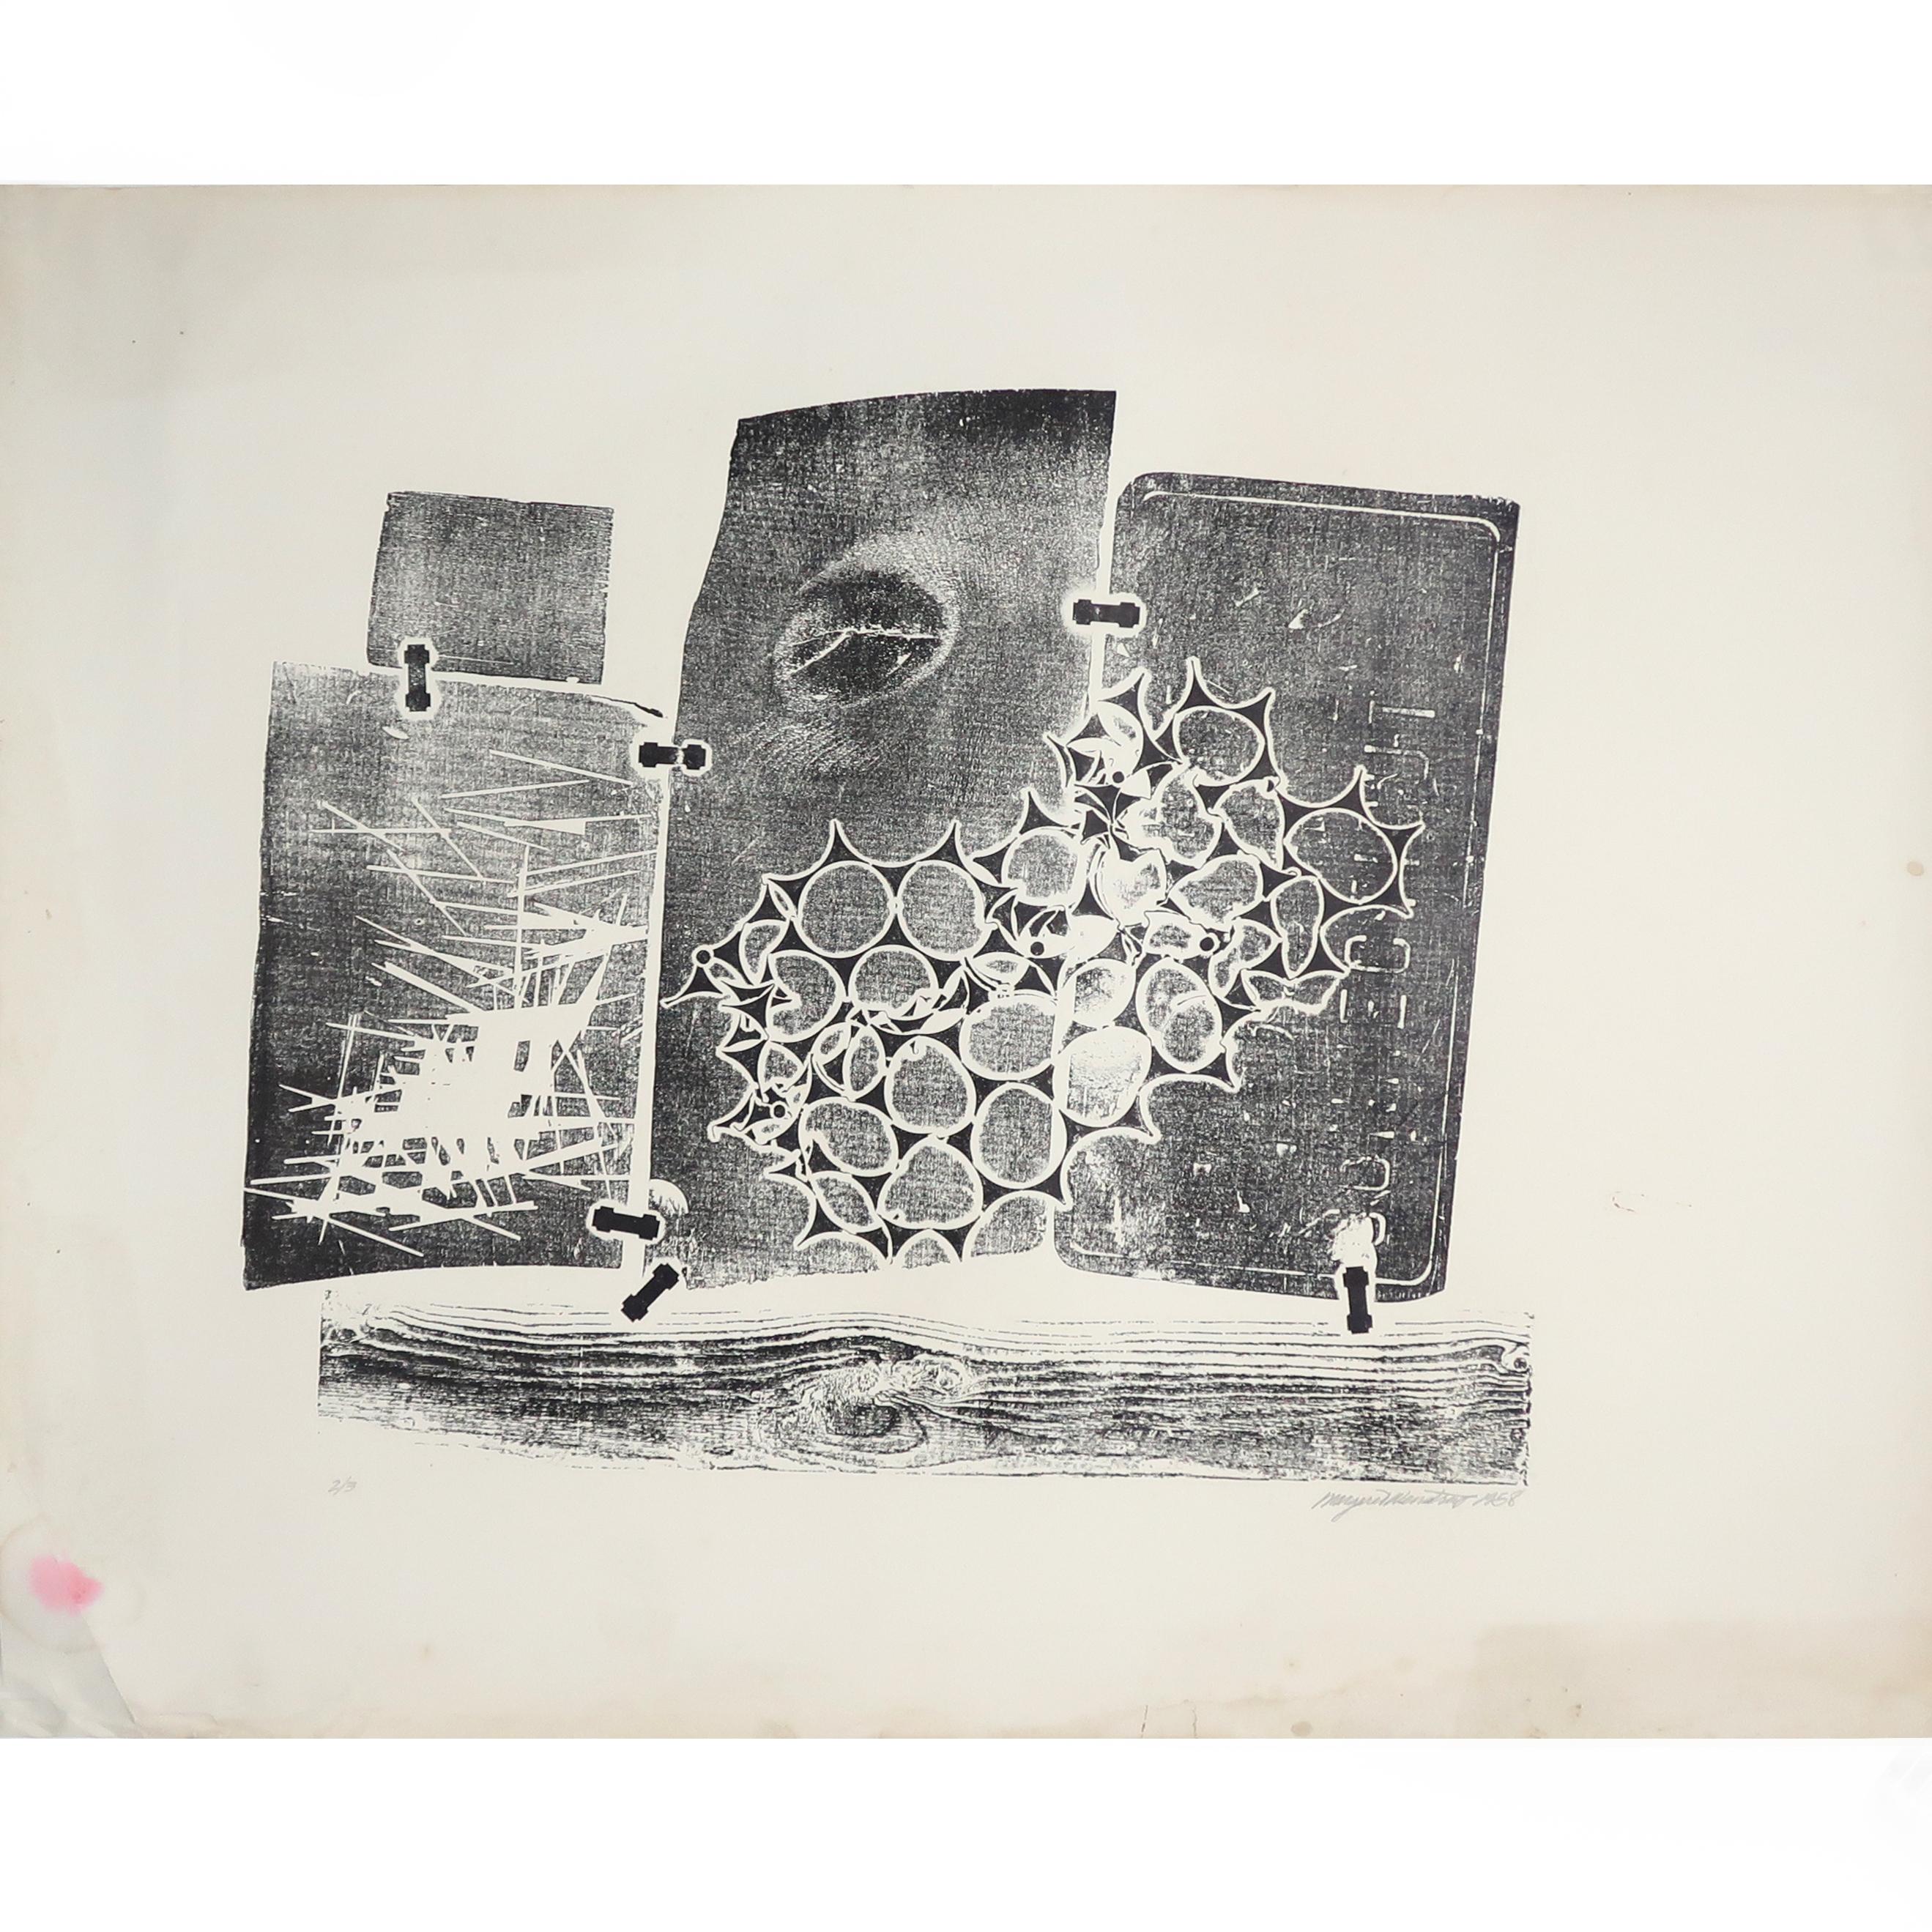 Une gravure abstraite sans titre de Margaret Wenstrup (1930-2008), datée de 1958. Wenstrup était un artiste bien connu de Cincinnati, OH, diplômé de l'Art Academy of Cincinnati, et est reconnu comme un pionnier du modernisme du milieu du siècle et